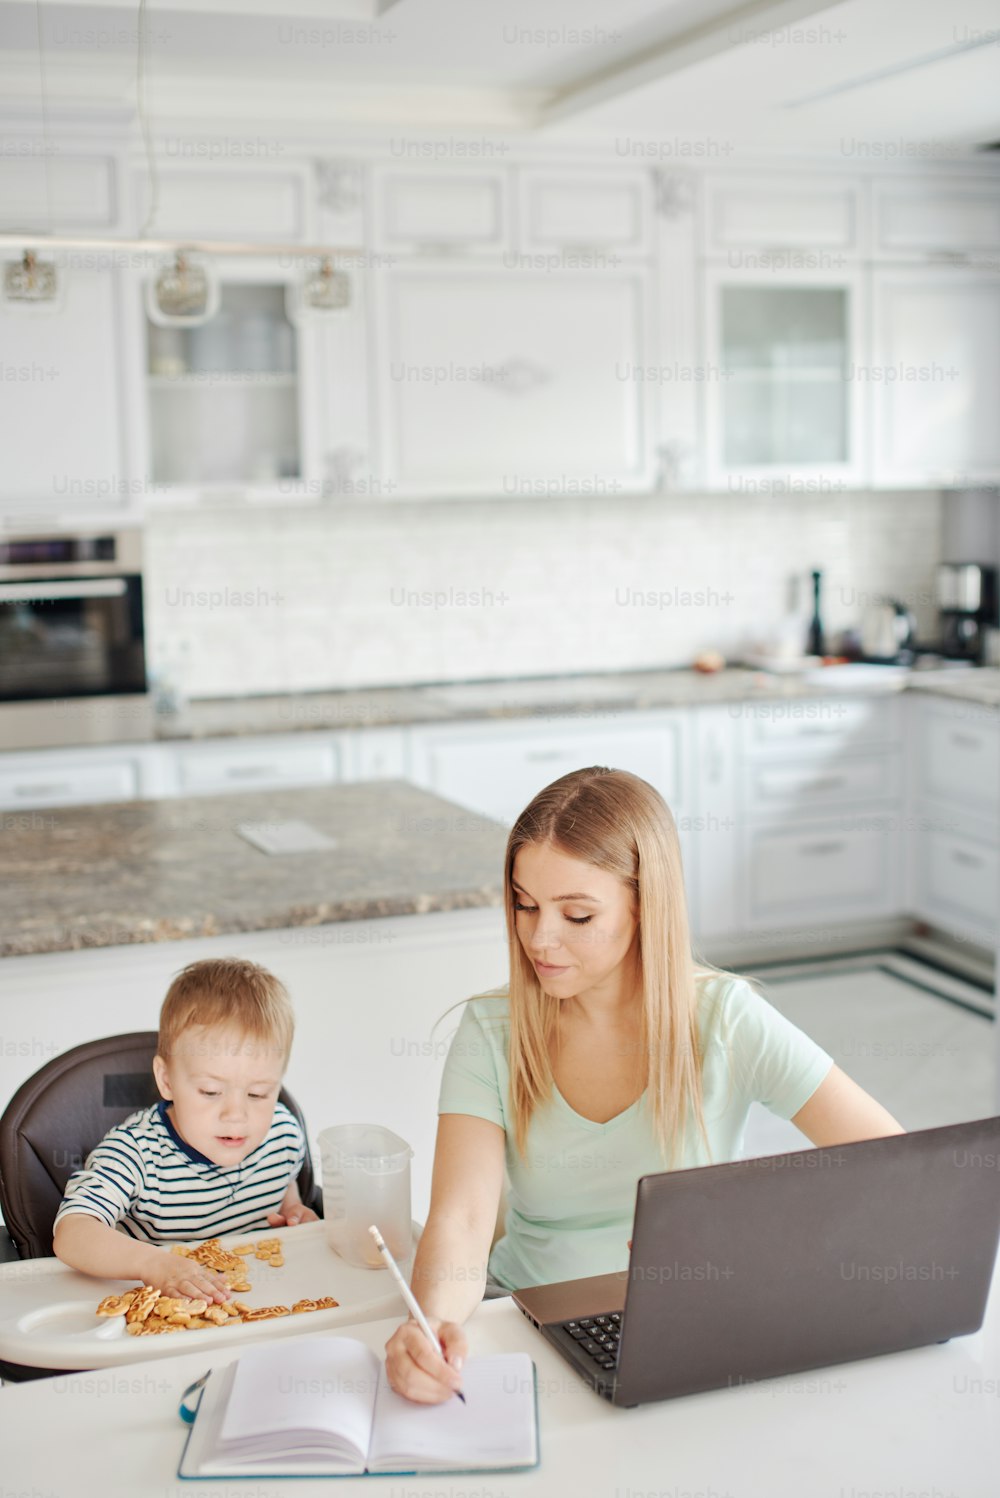 집에서 아이를 가진 젊은 금발 여자의 초상화. 그녀는 노트북을 사용하고 있고, 아들은 아기 의자에 앉아 식사를 하고 있다. 집에 머물기, 집에서 일, 바쁜 어머니 개념